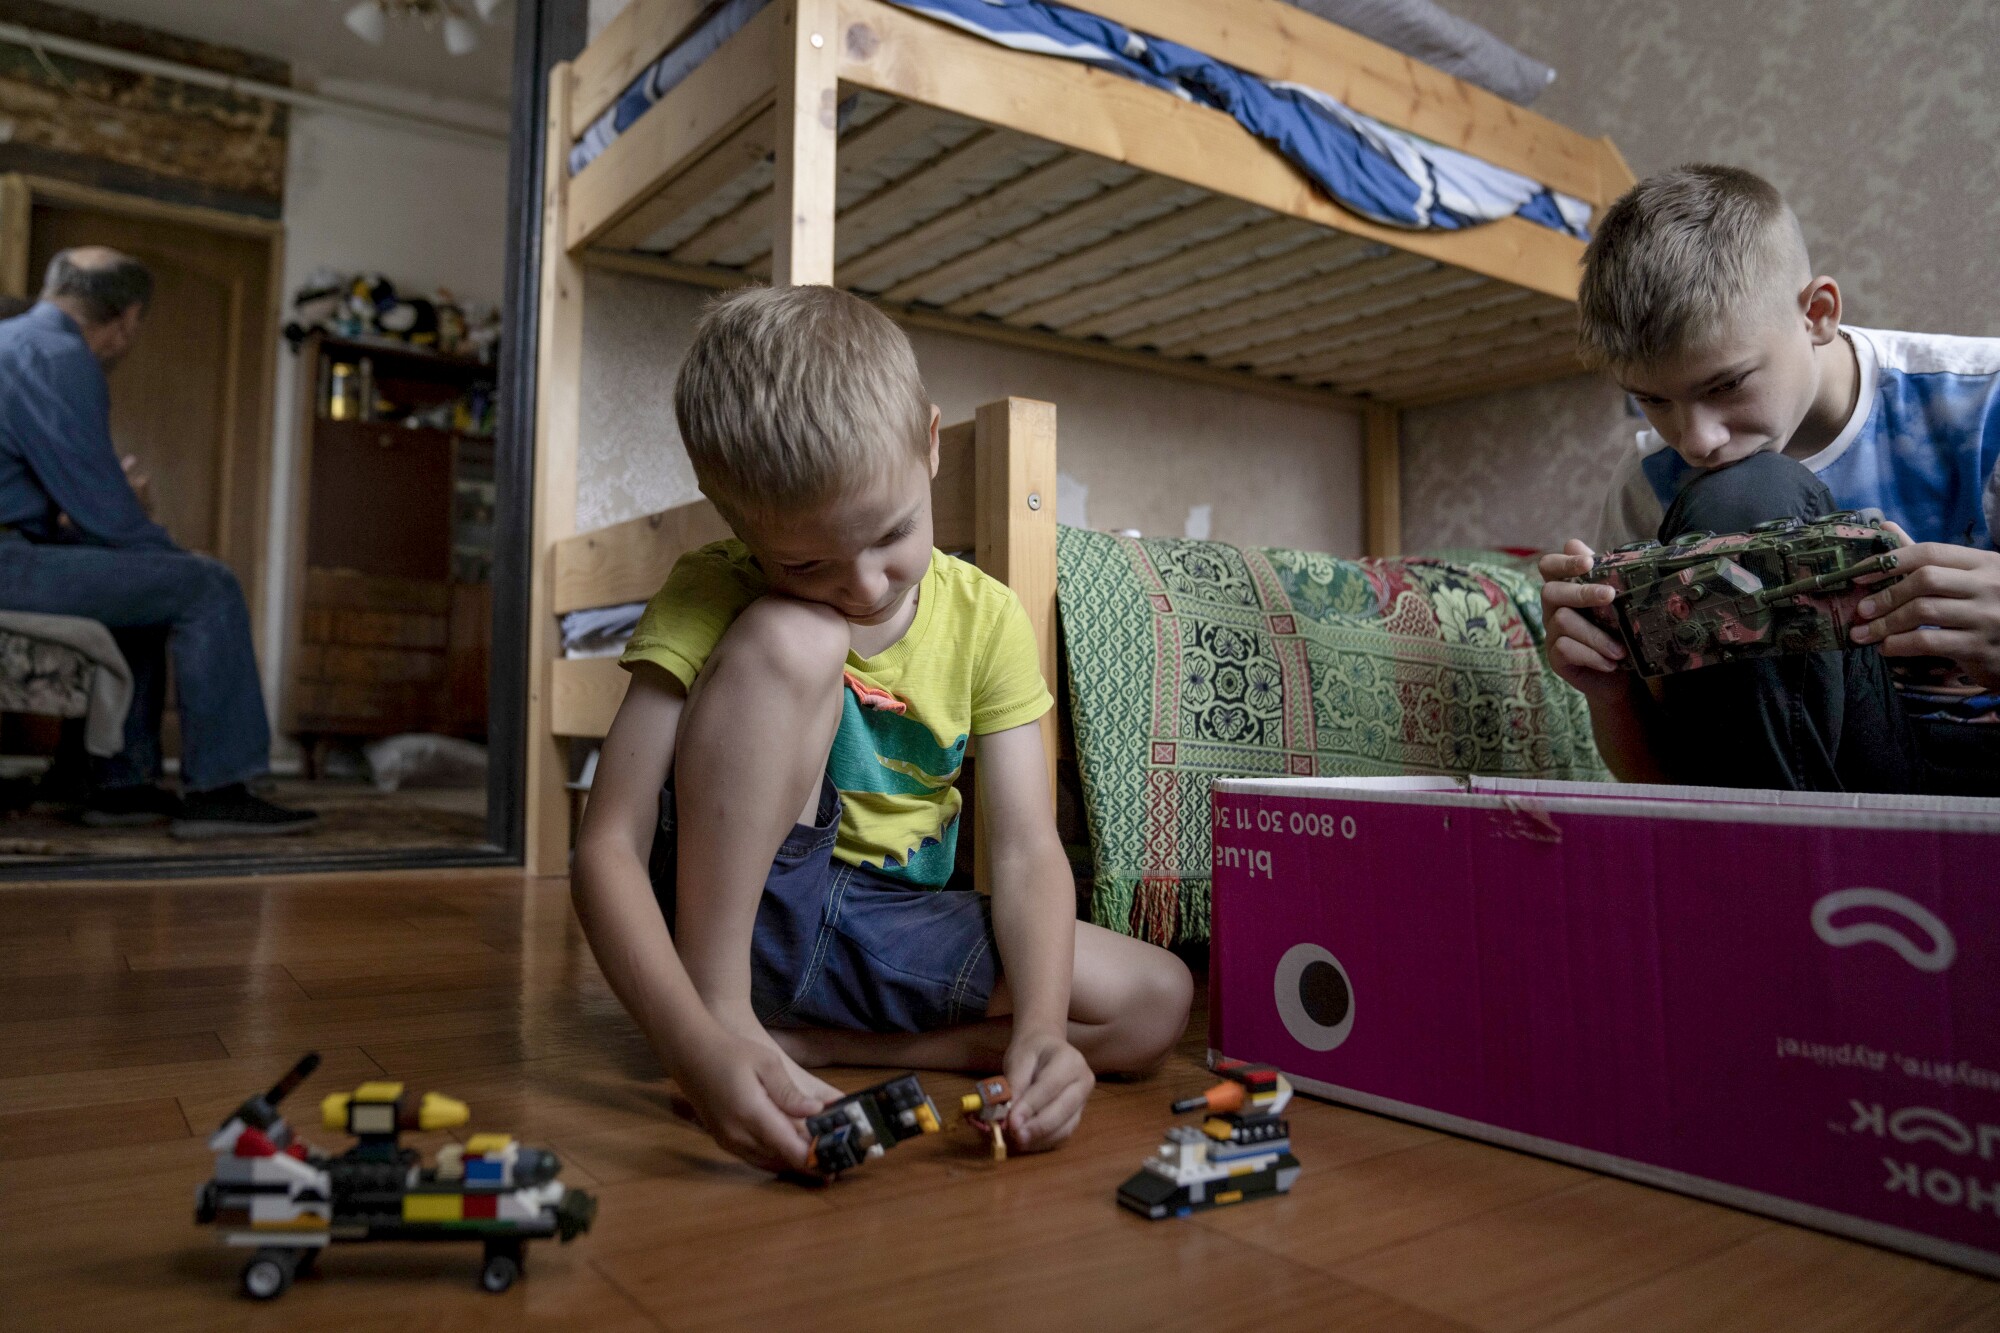 دو پسر در یک اتاق با اسباب بازی بازی می کنند.